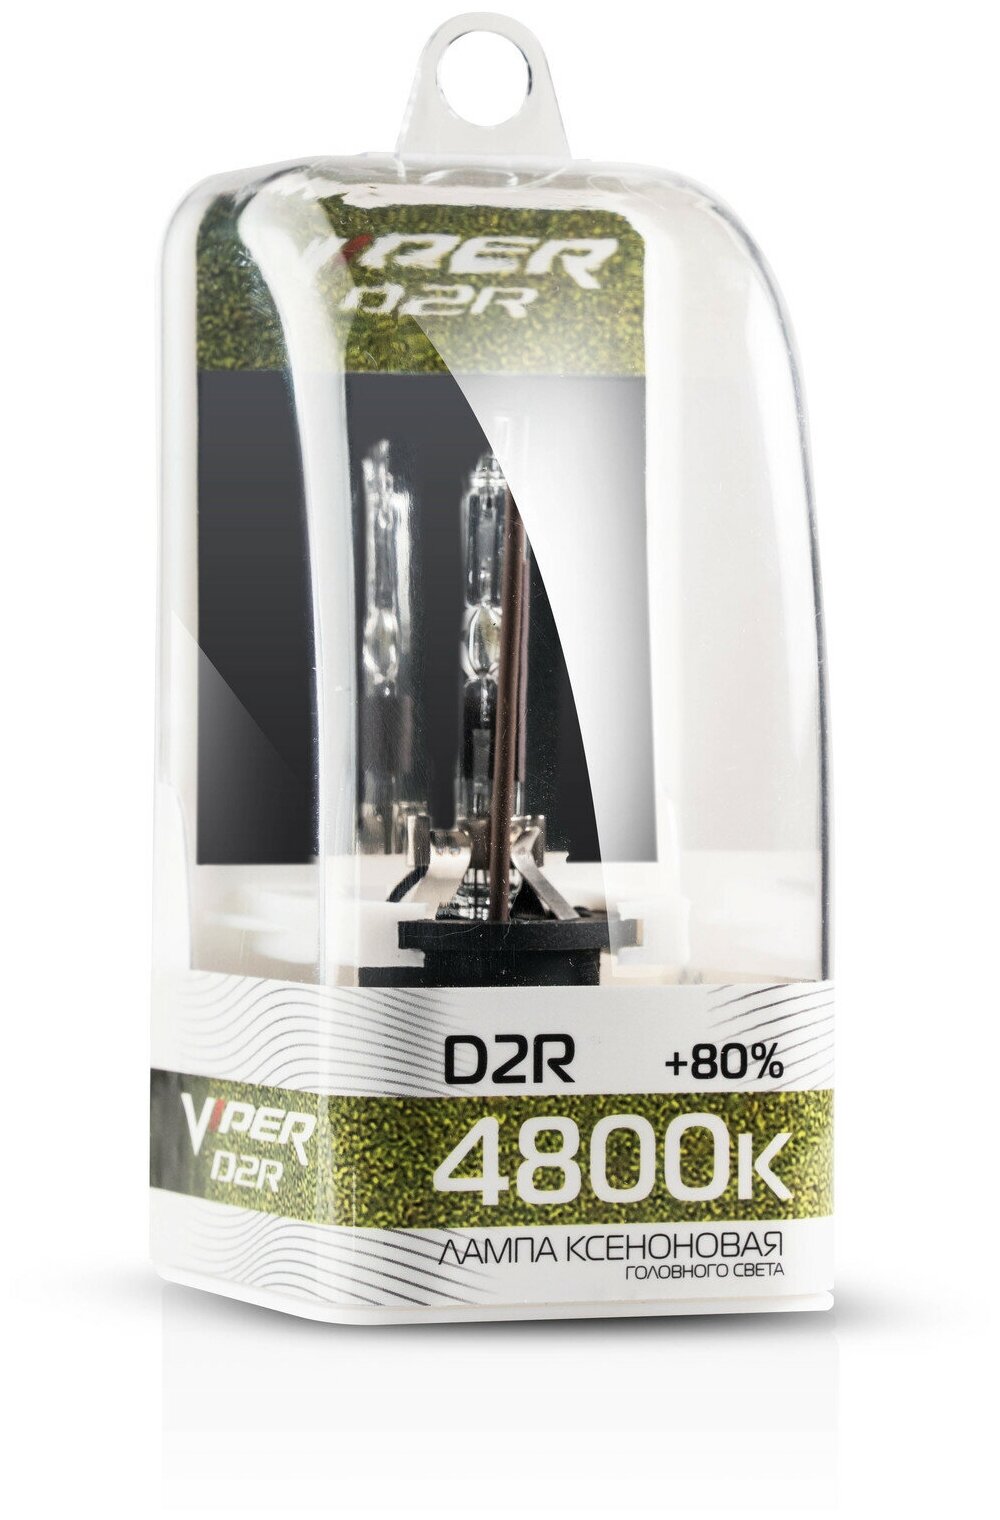 Лампа ксеноновая Viper D2R (4800K) 1 шт.